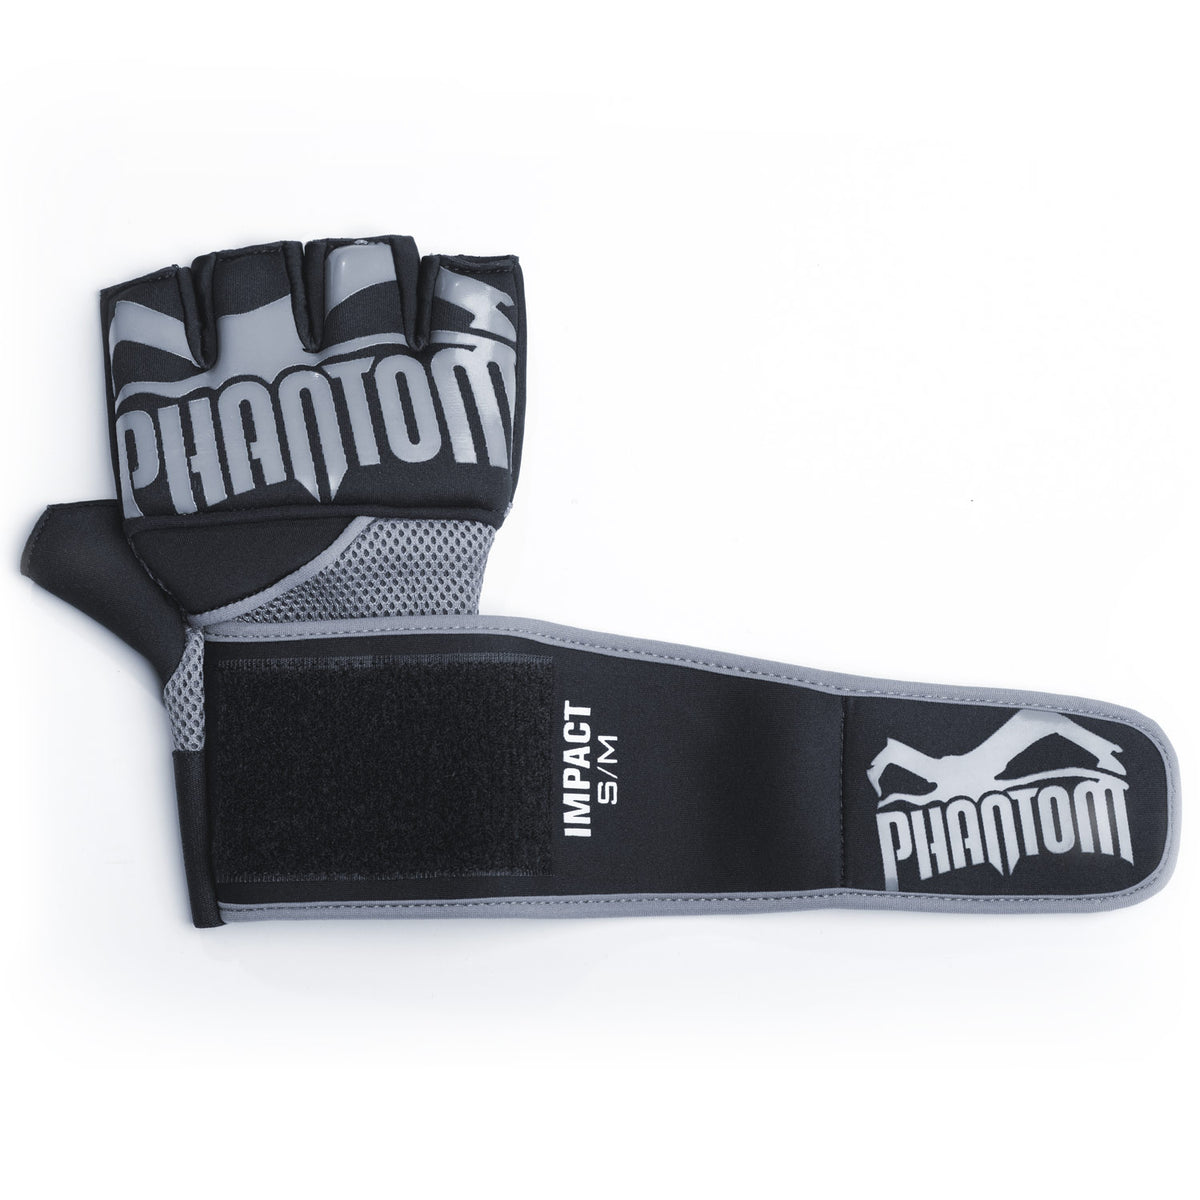 Die Phantom Gel Neopren Handschuhe für dein Kampfsporttraining. Produziert aus hochwertigem Neopren und Silikon. SIe verfügen über eine lange Handgelenksbandage für optimalen Support sowie Mesh Material für eine Belüftung beim Sport. 